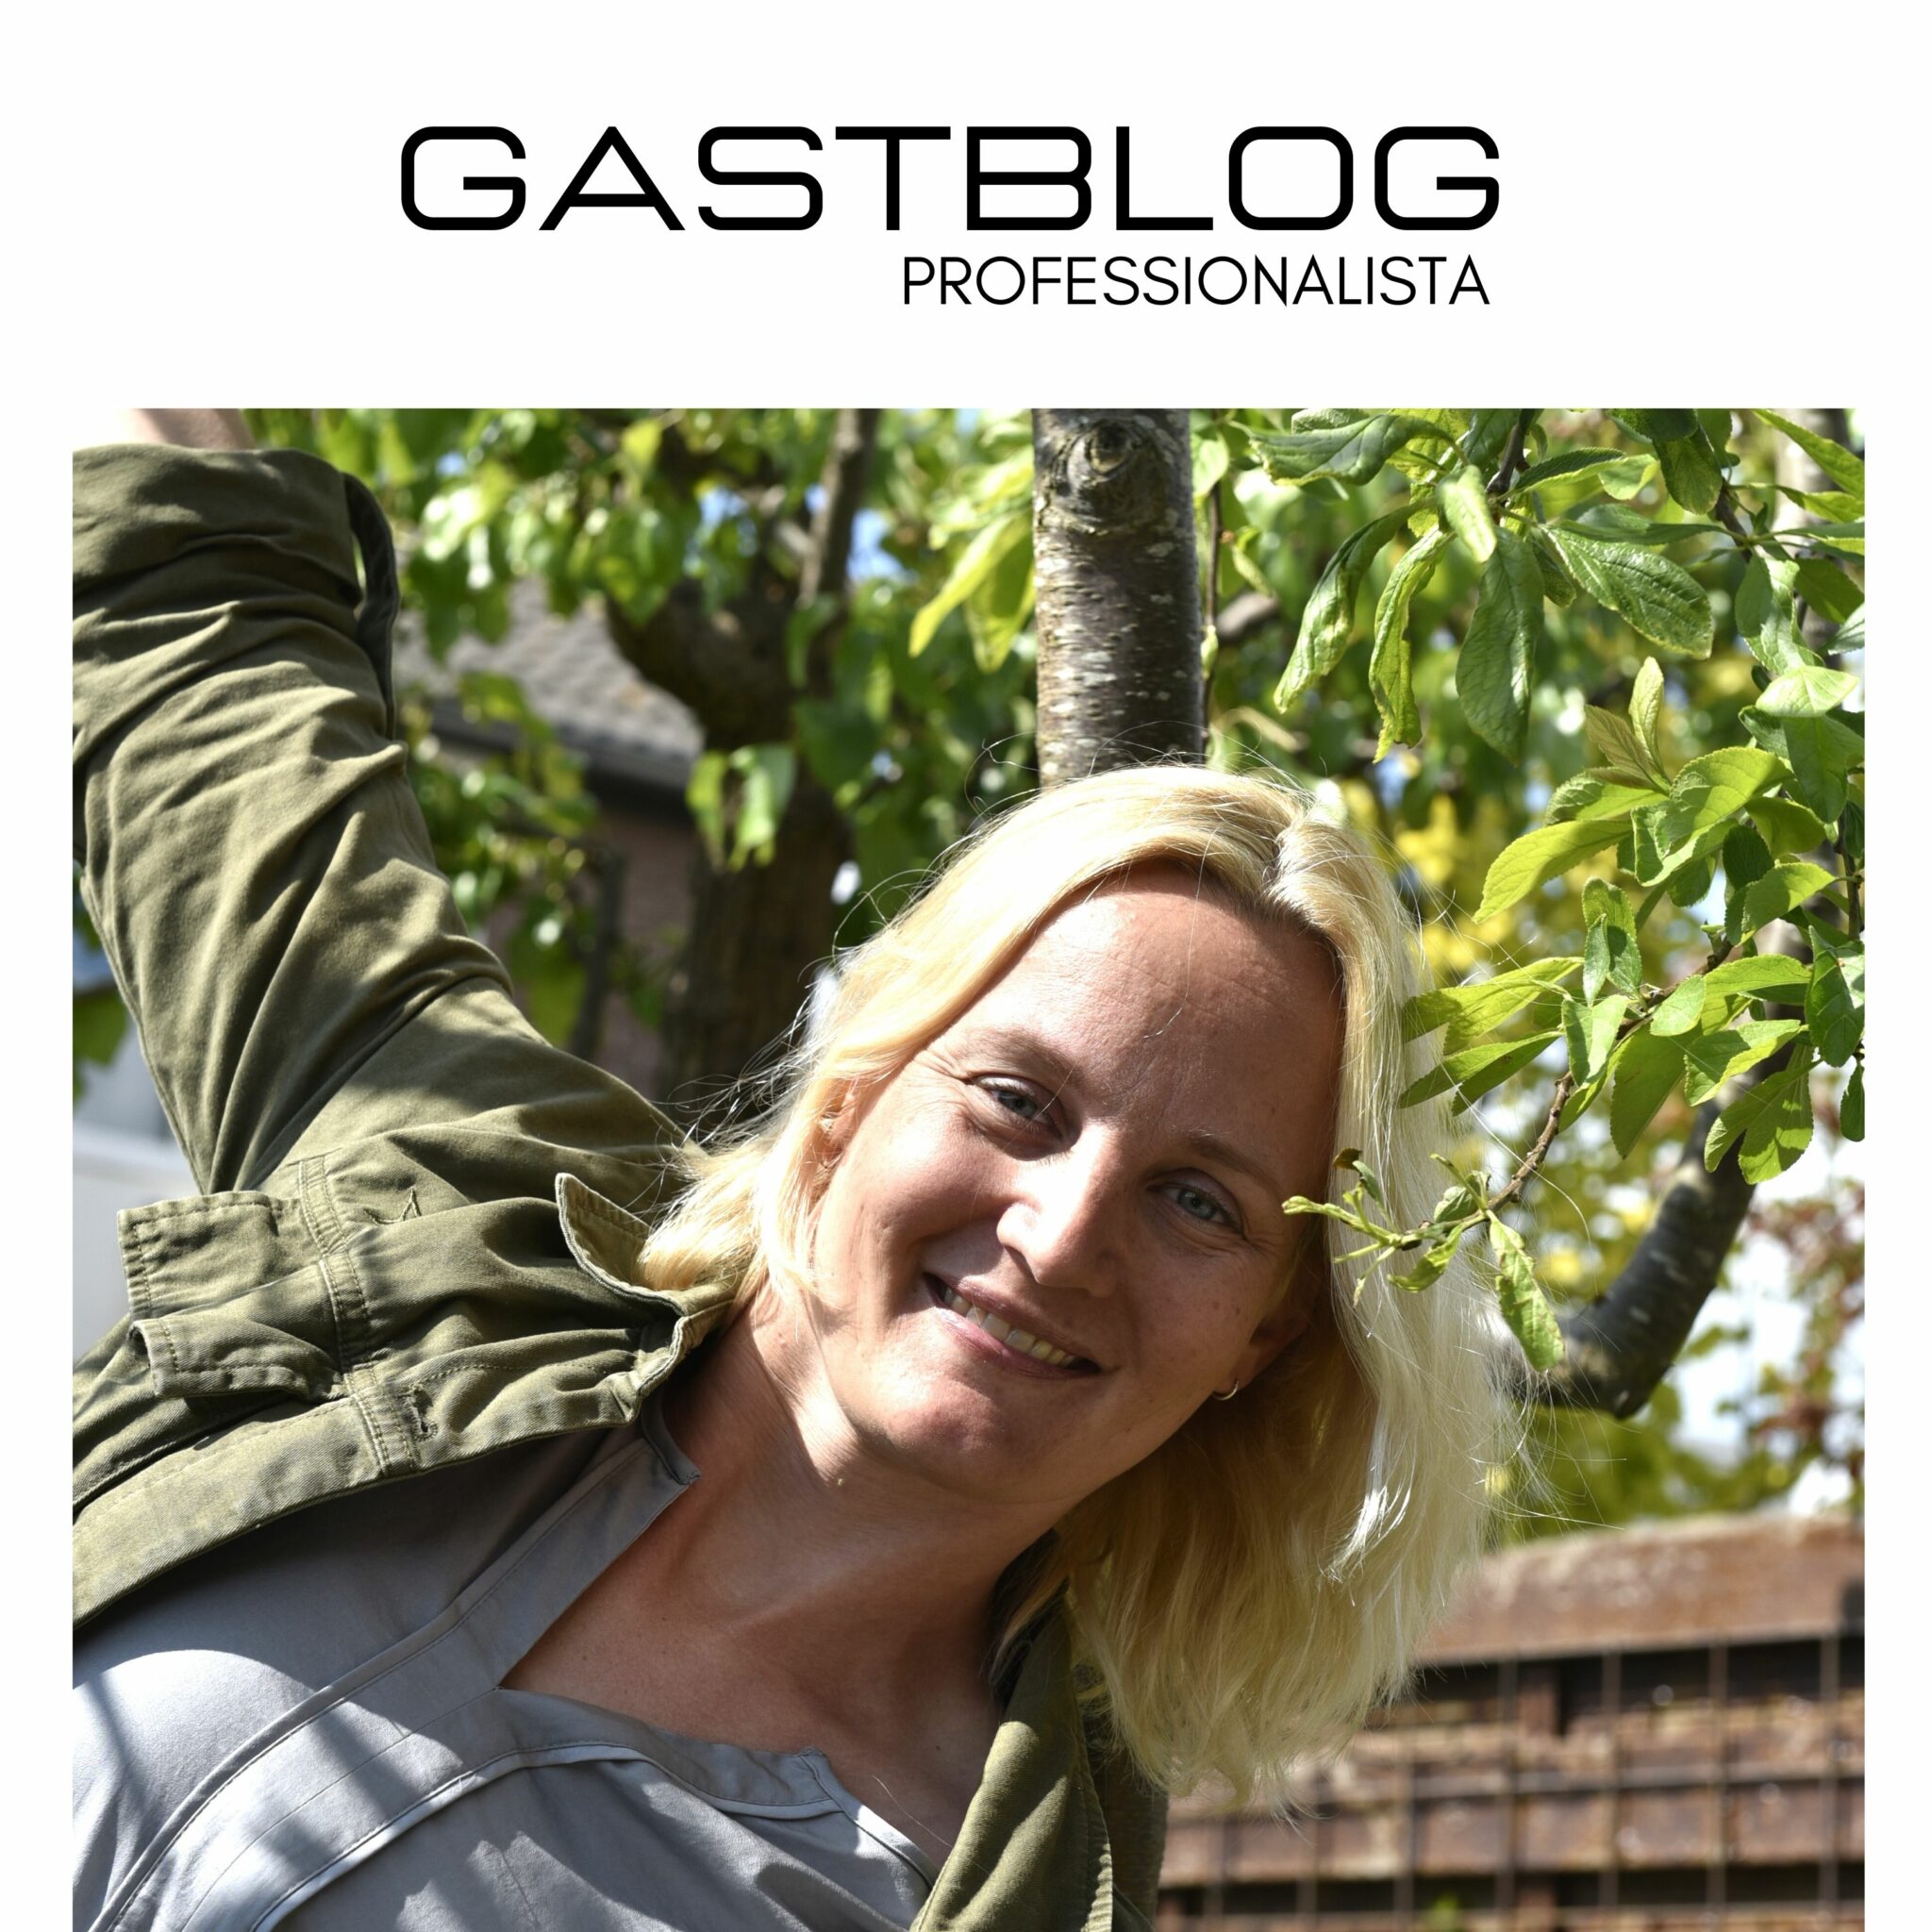 Gastblog Professionalista Roos Hanemaaijer – Mijn producten zijn niet perfect.